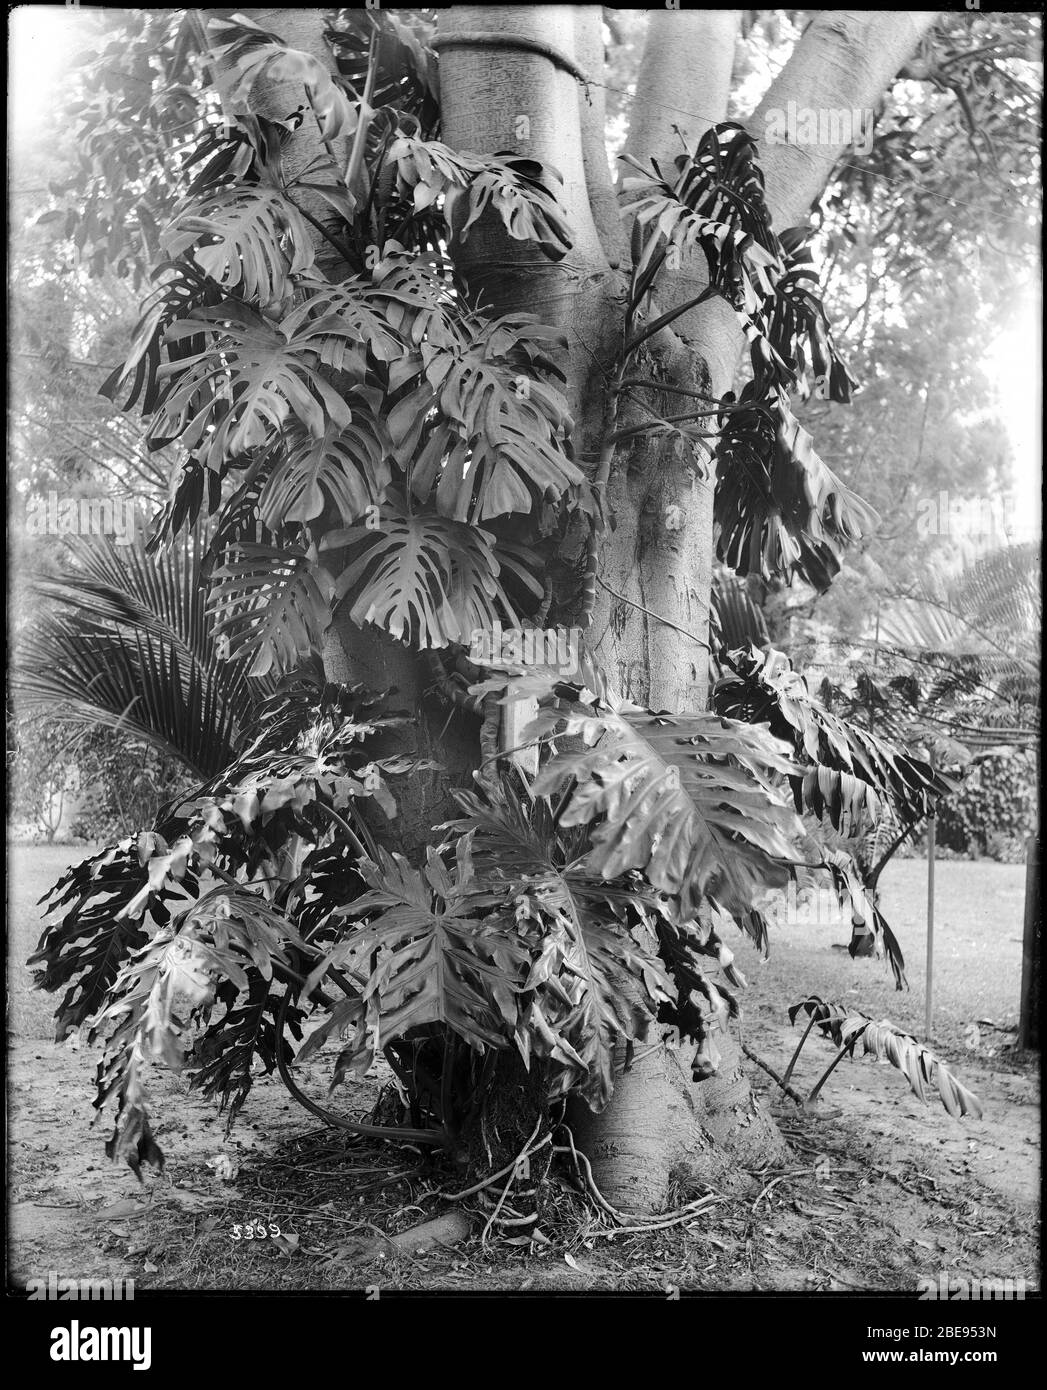 Inglés: Una planta de filodendros, CA.1920 Fotografía de una planta de  filodendros, CA.1920. La planta está enredada alrededor de un árbol grande.  Otras plantas y árboles son visibles en el fondo. Parte